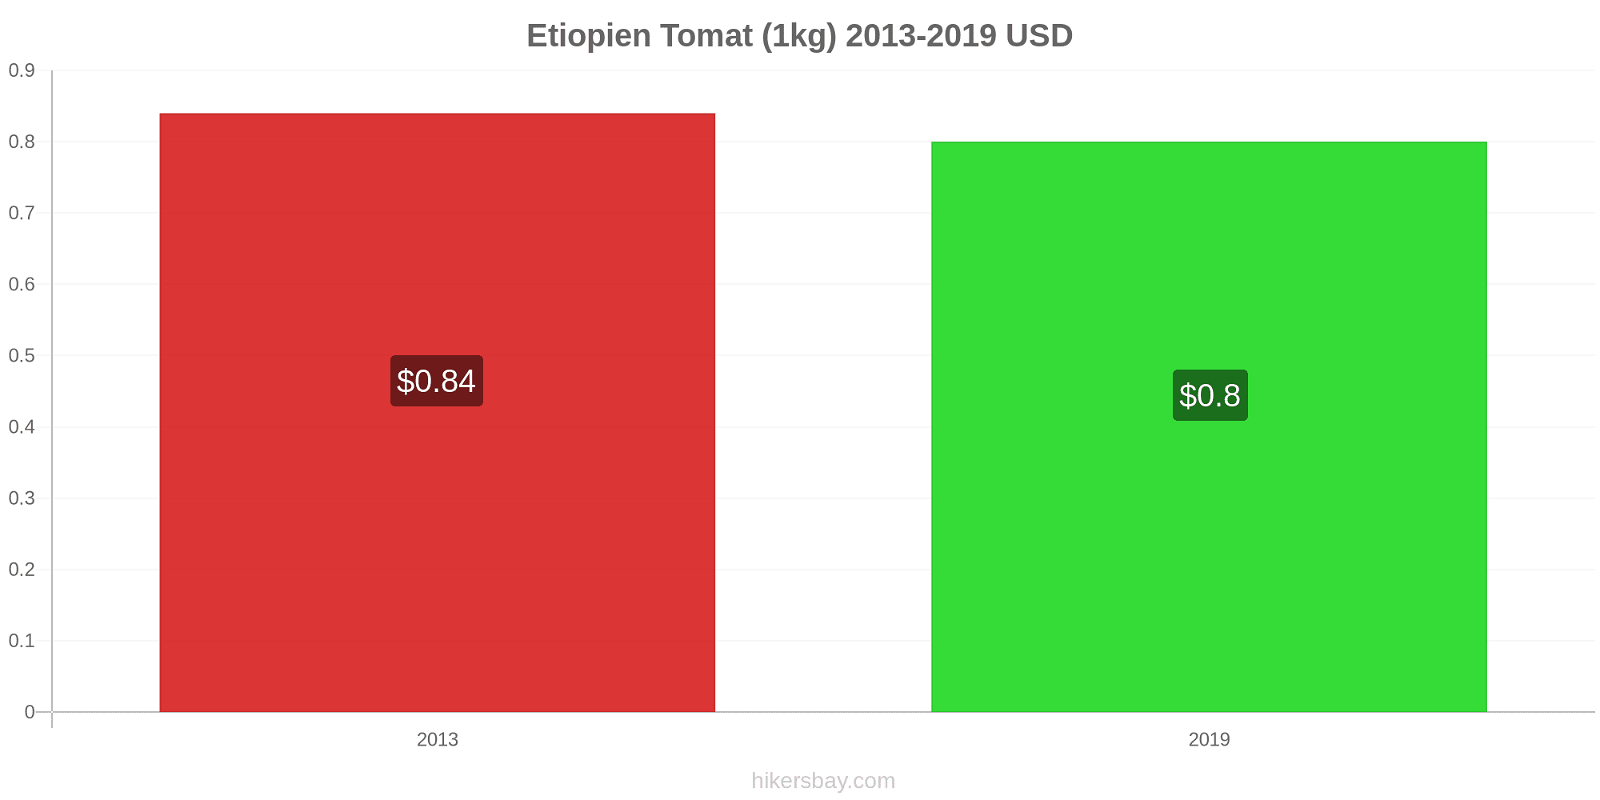 Etiopien prisförändringar Tomat (1kg) hikersbay.com